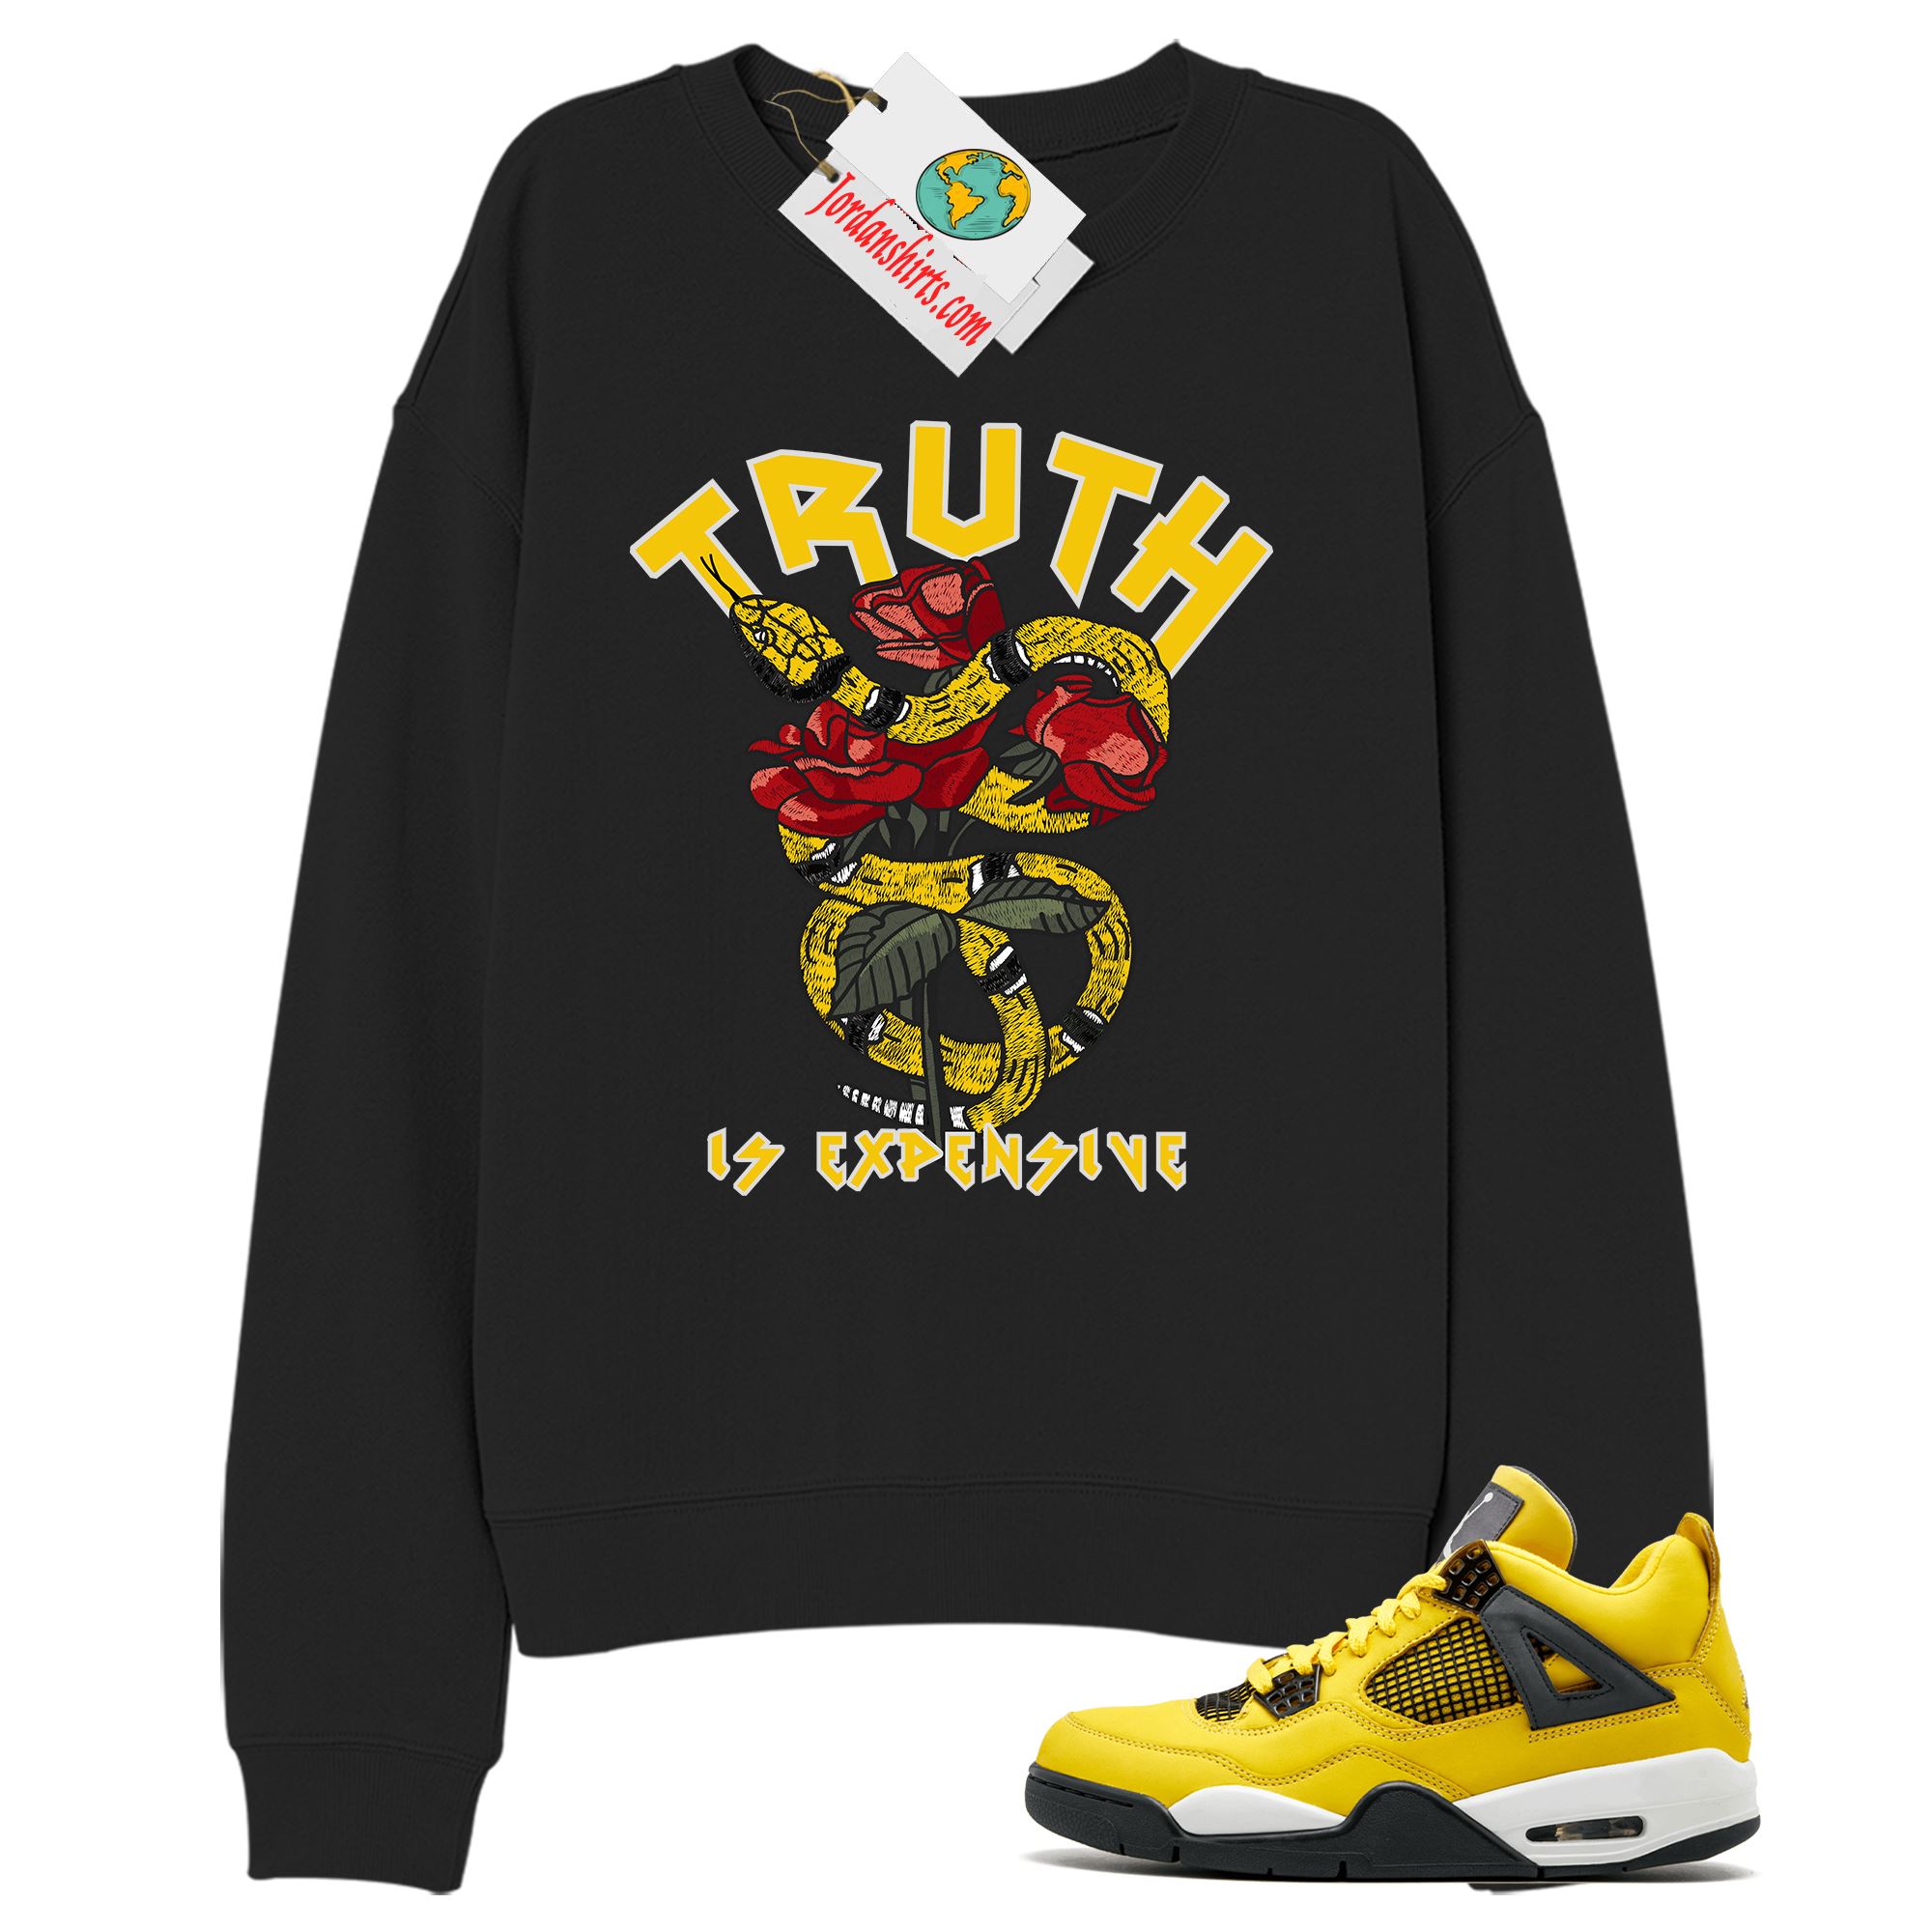 Jordan 4 Sweatshirt, Truth Is Expensive Snake Black Sweatshirt Air Jordan 4 Tour Yellow Lightning 4s Plus Size Up To 5xl